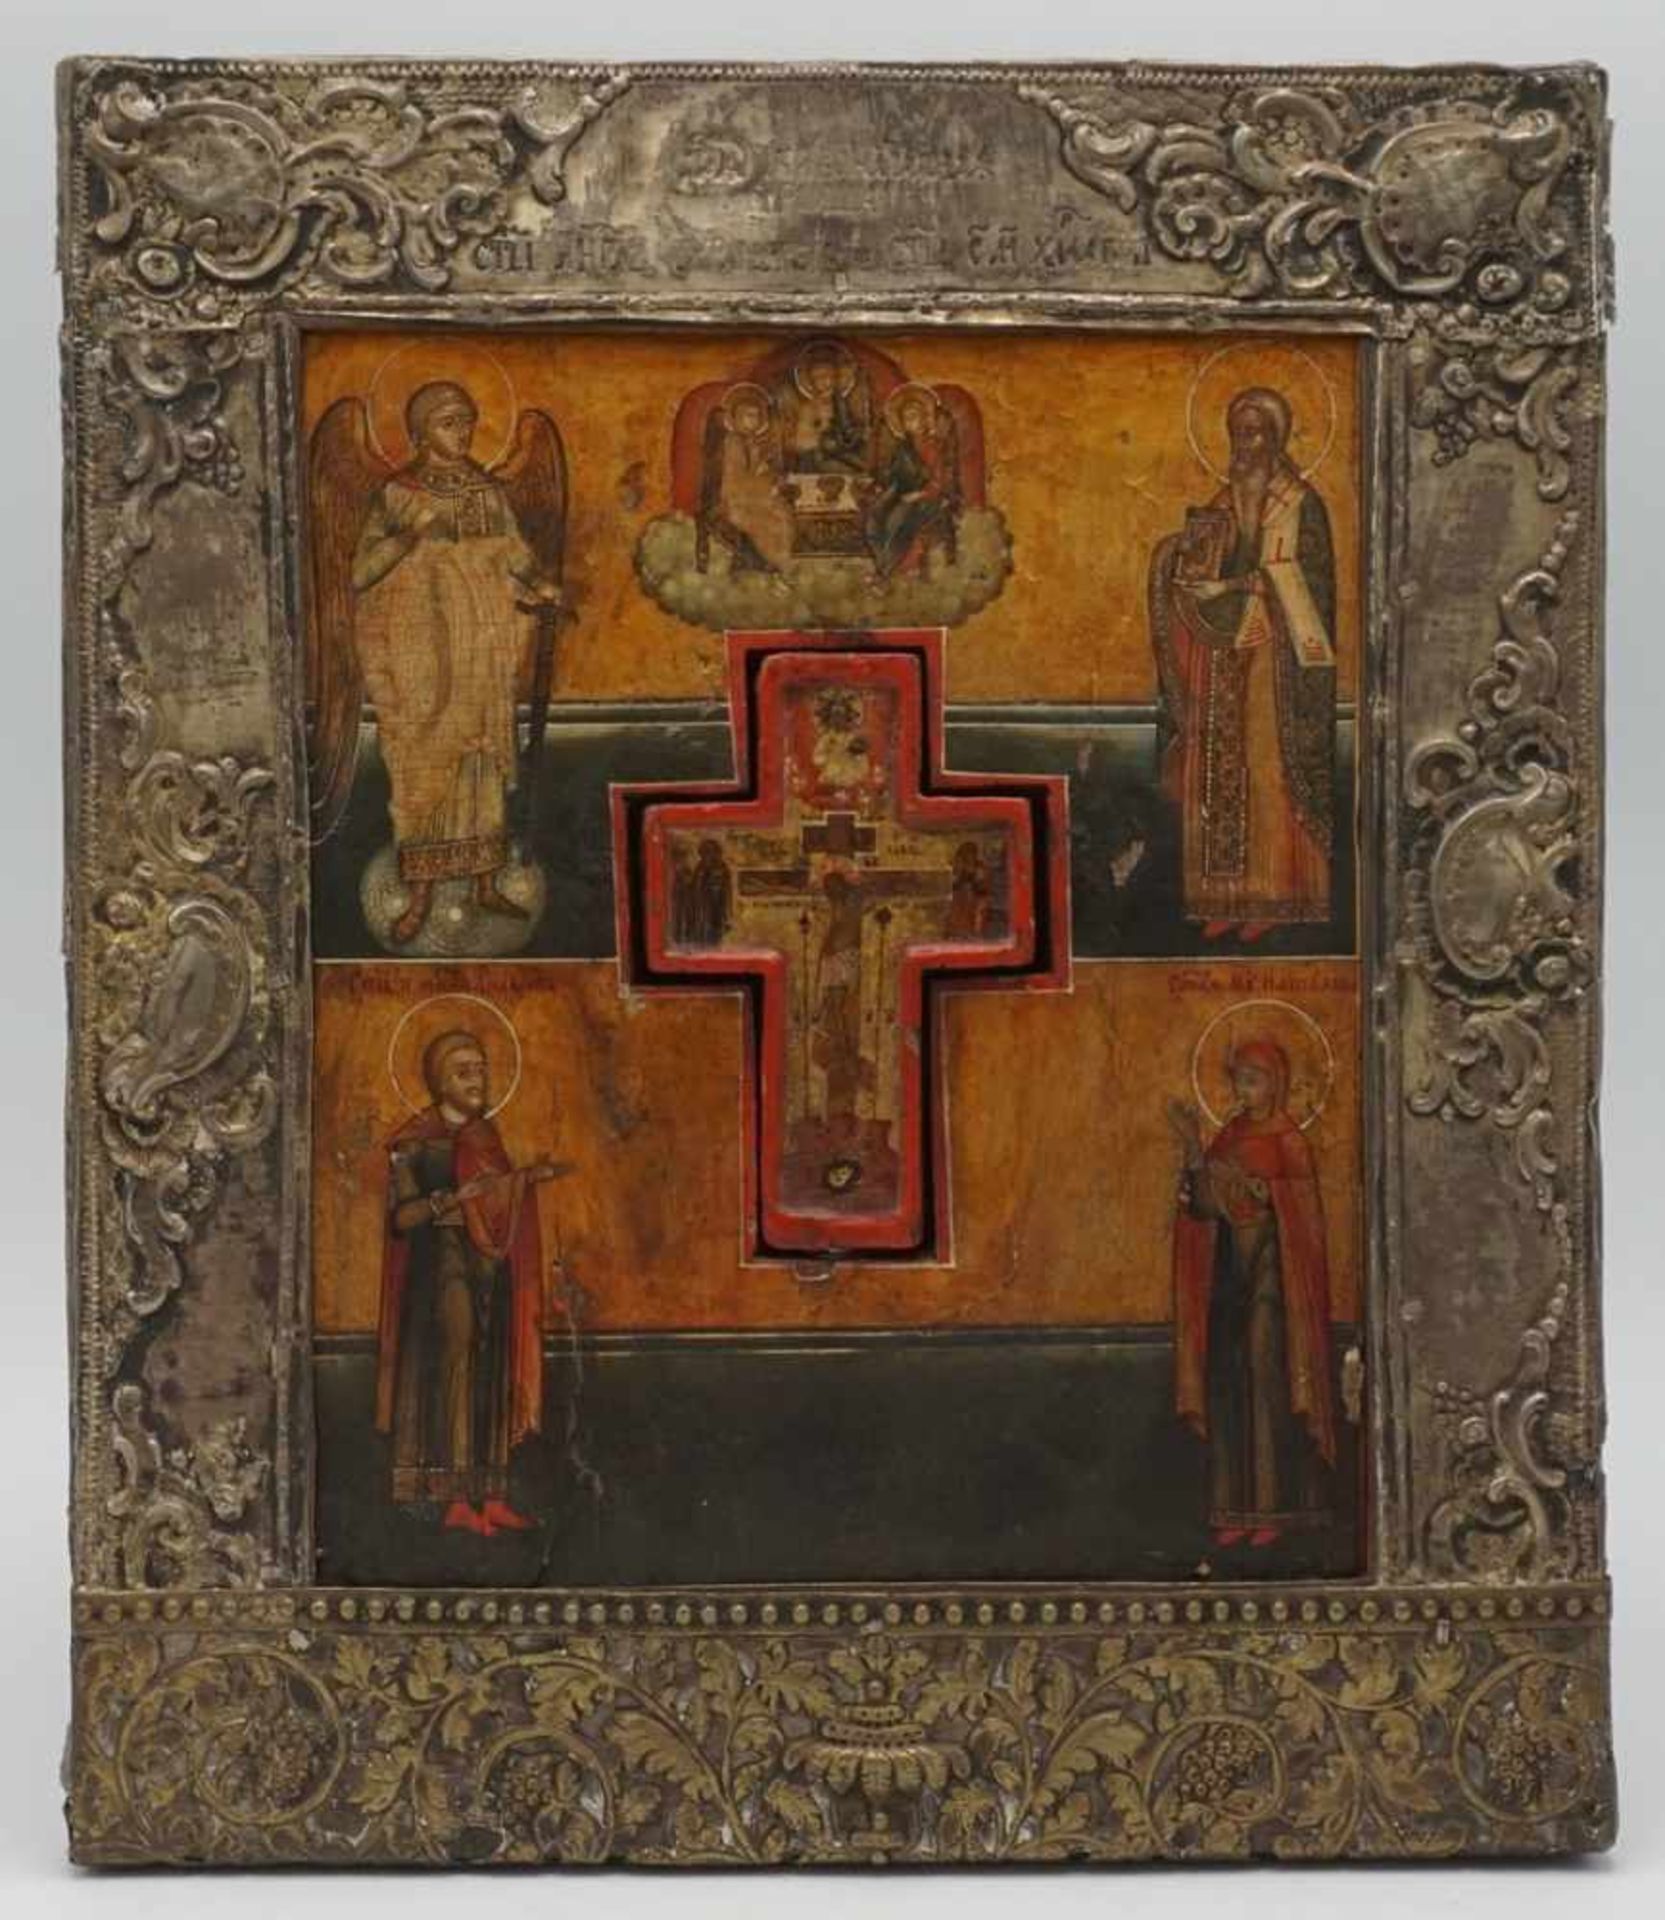 Seltene Staurothek-Ikone mit eingelegtem Holzkreuz mit Reliquienfach, Russland, 18./19. Jh.Bildfeld: